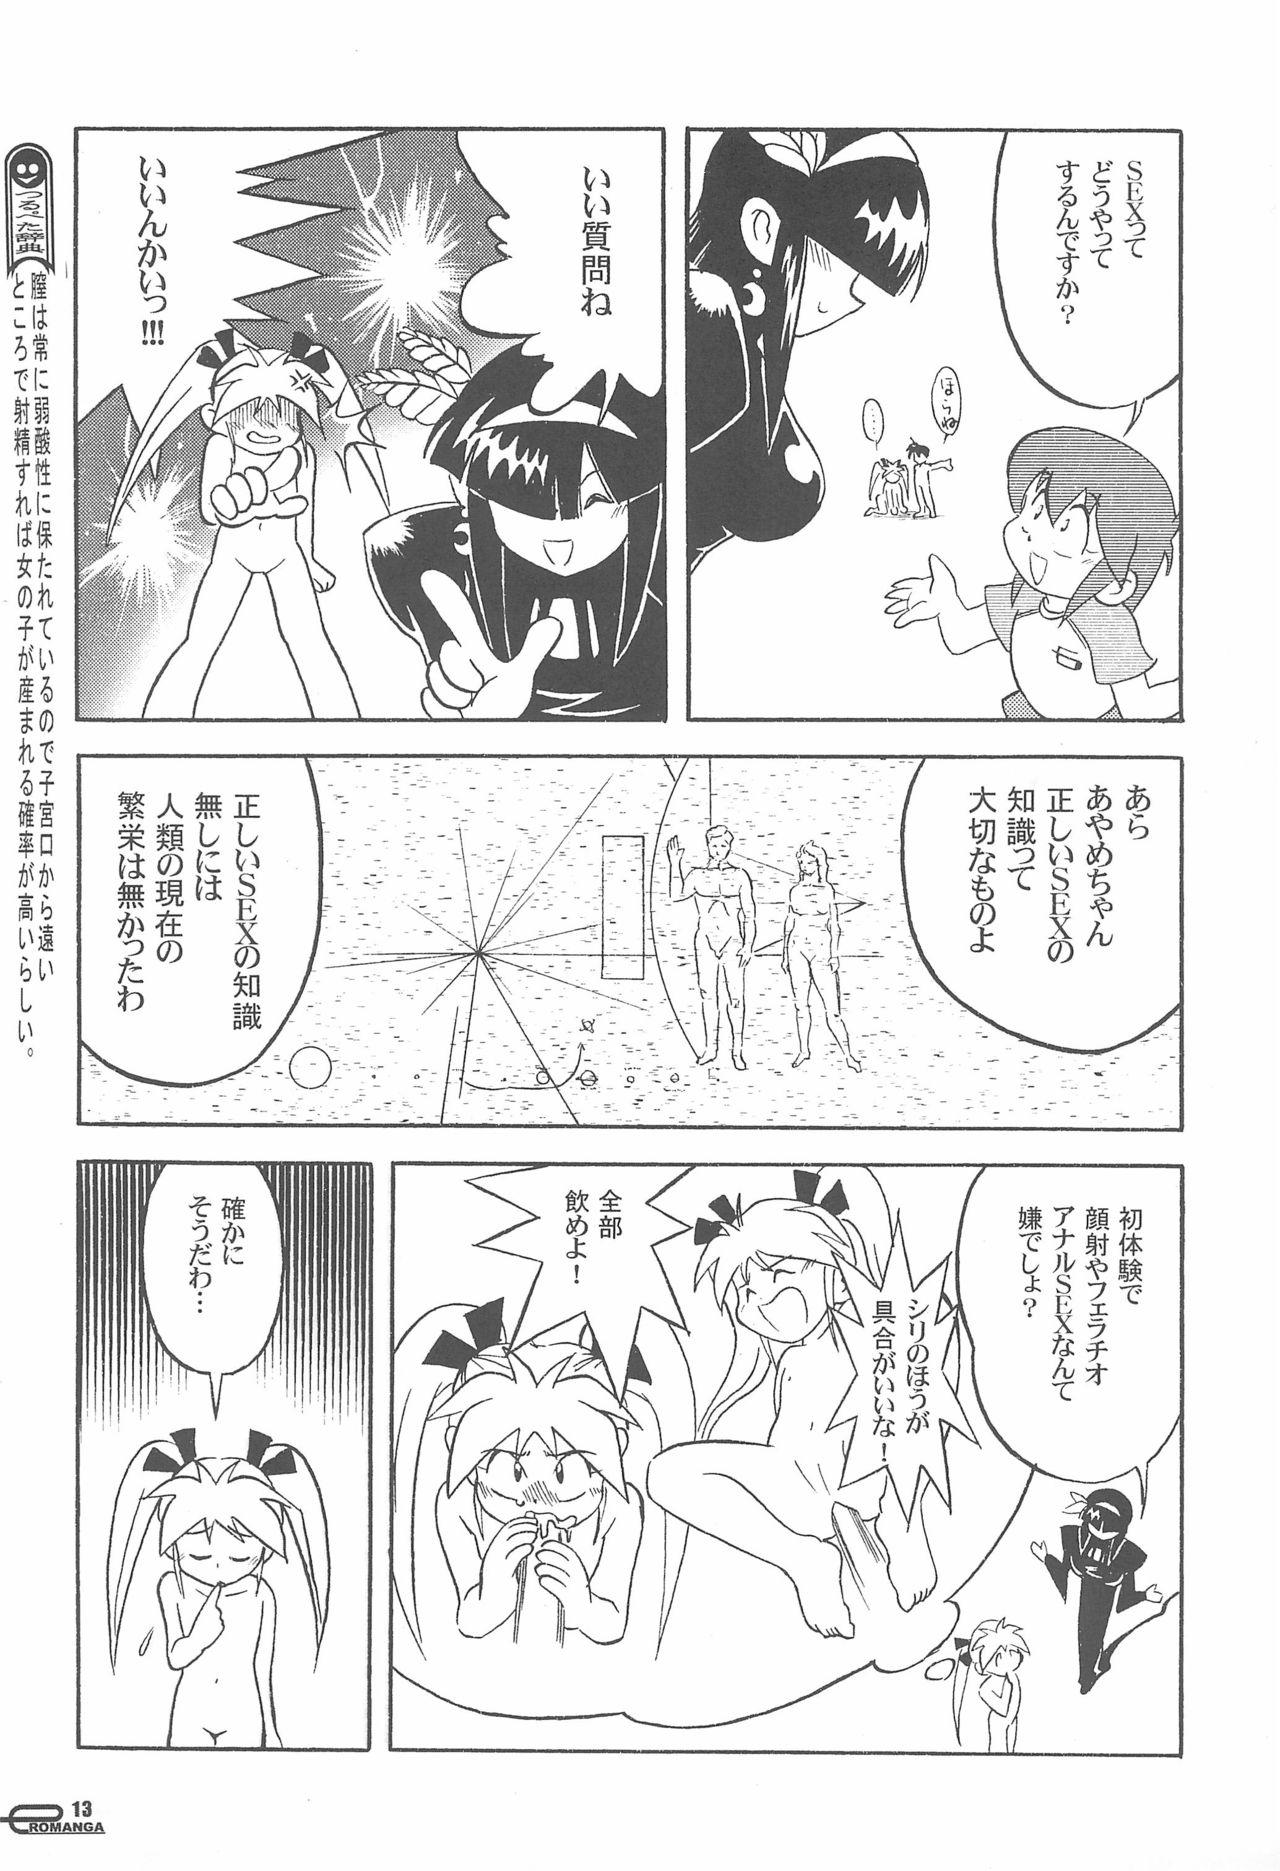 Manga Science Onna no ko no Himitsu 14